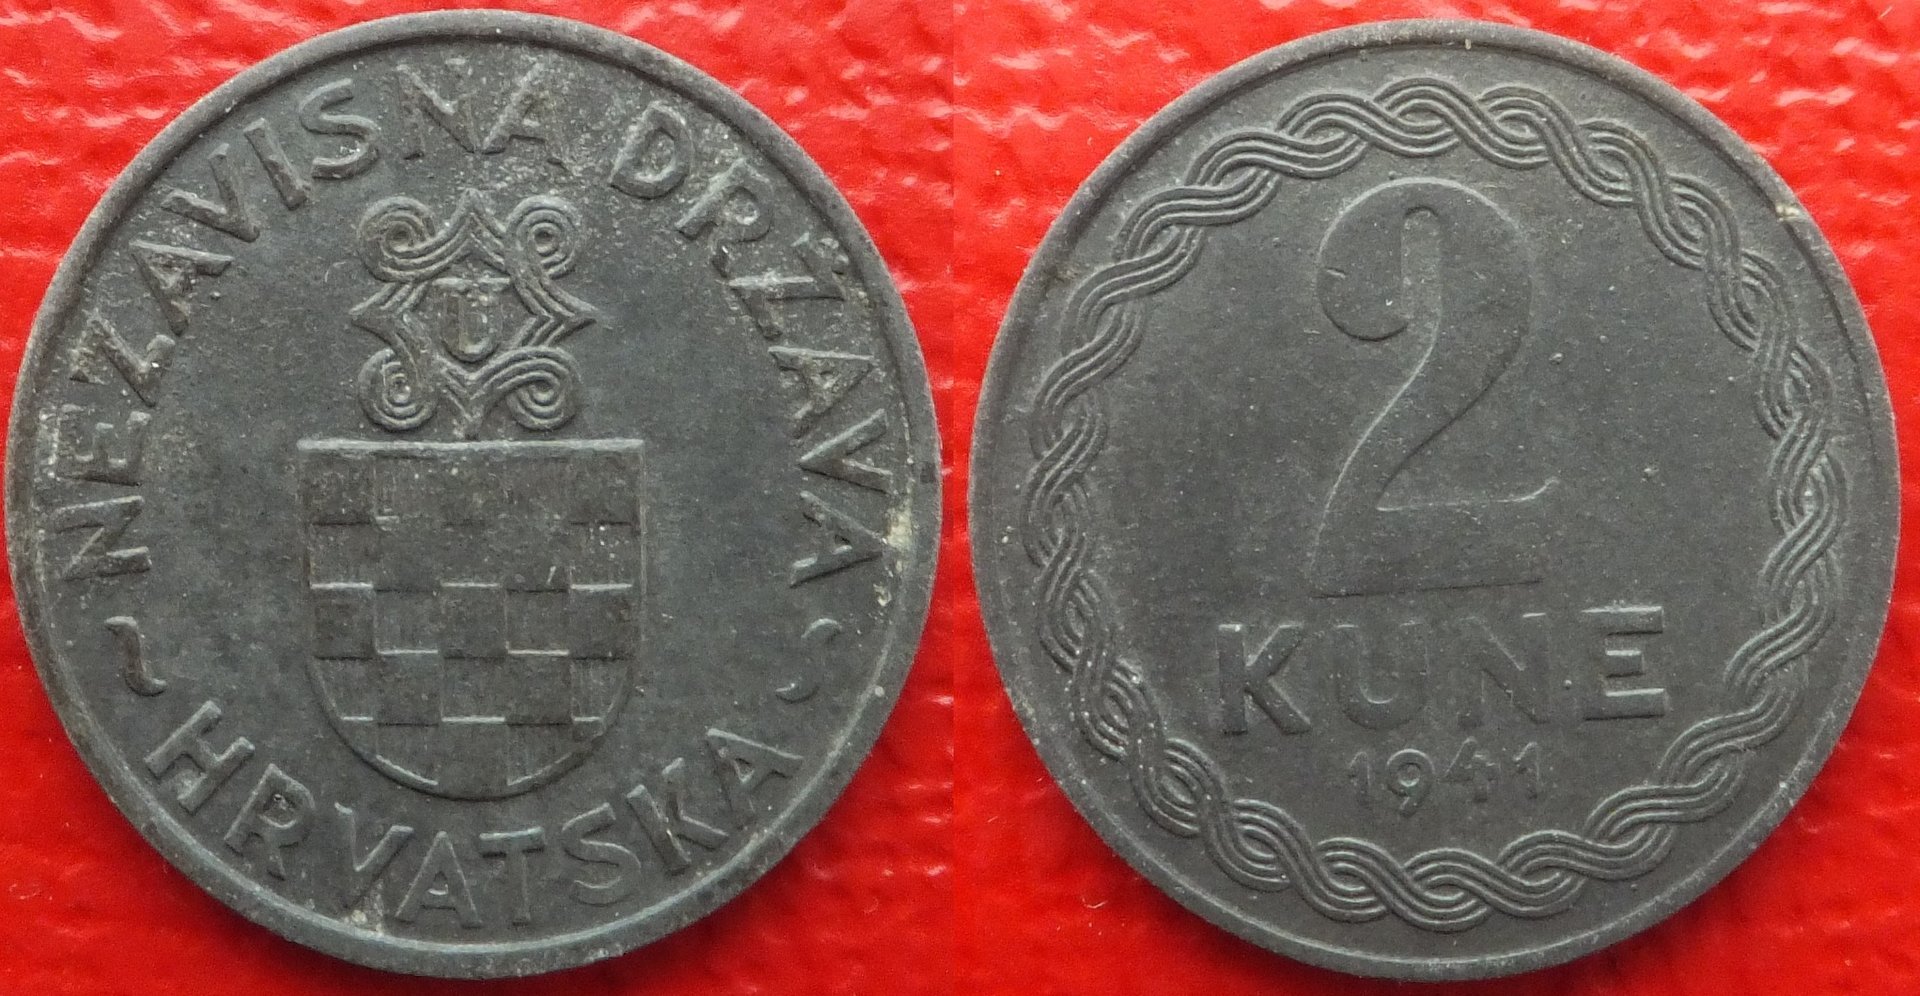 Croatia 2 kune 1941 (3).jpg